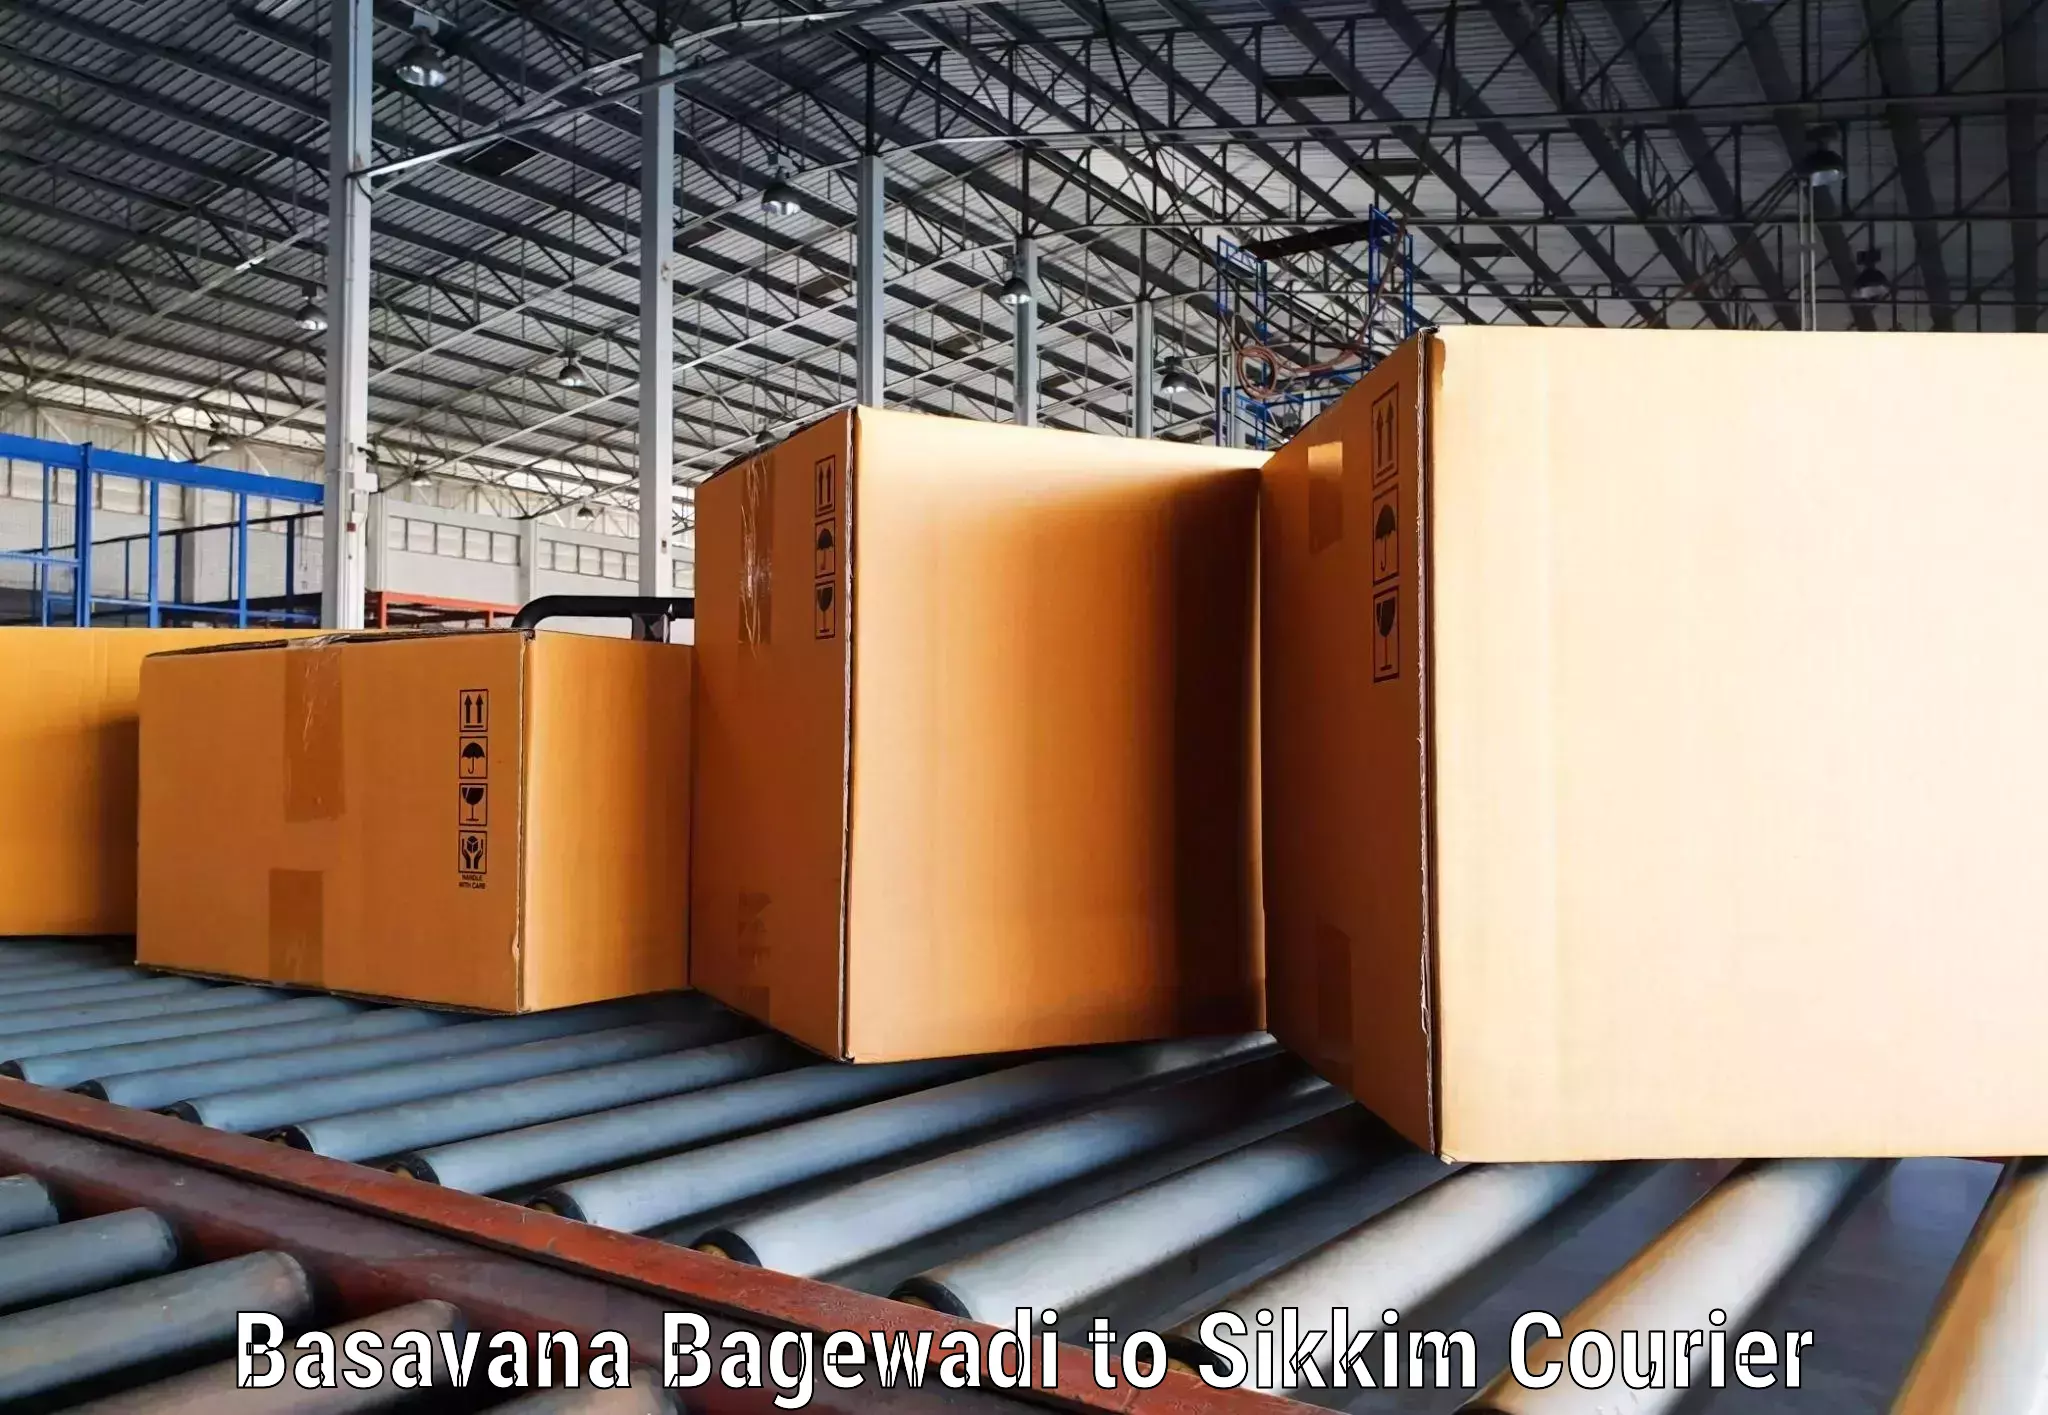 Door-to-door freight service Basavana Bagewadi to Rangpo